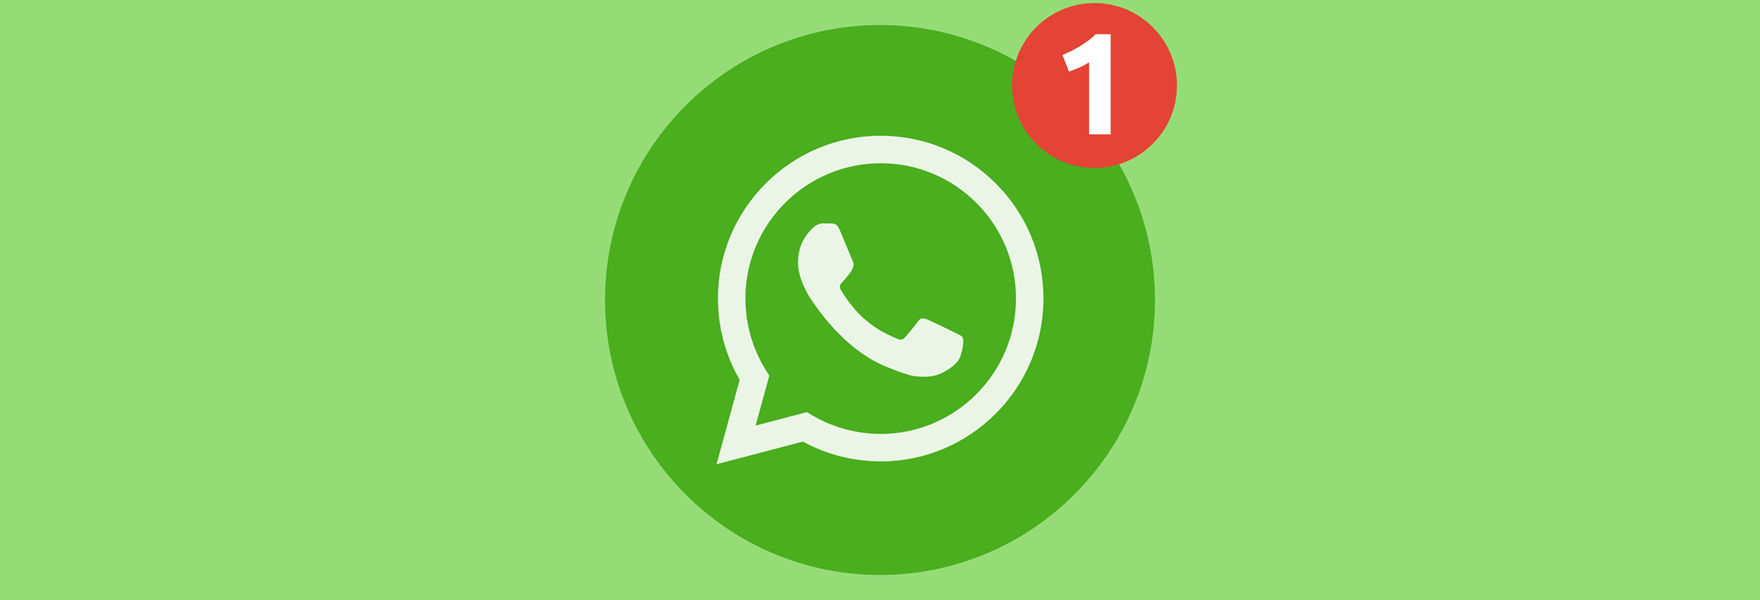 Whatsapp Updates 2 